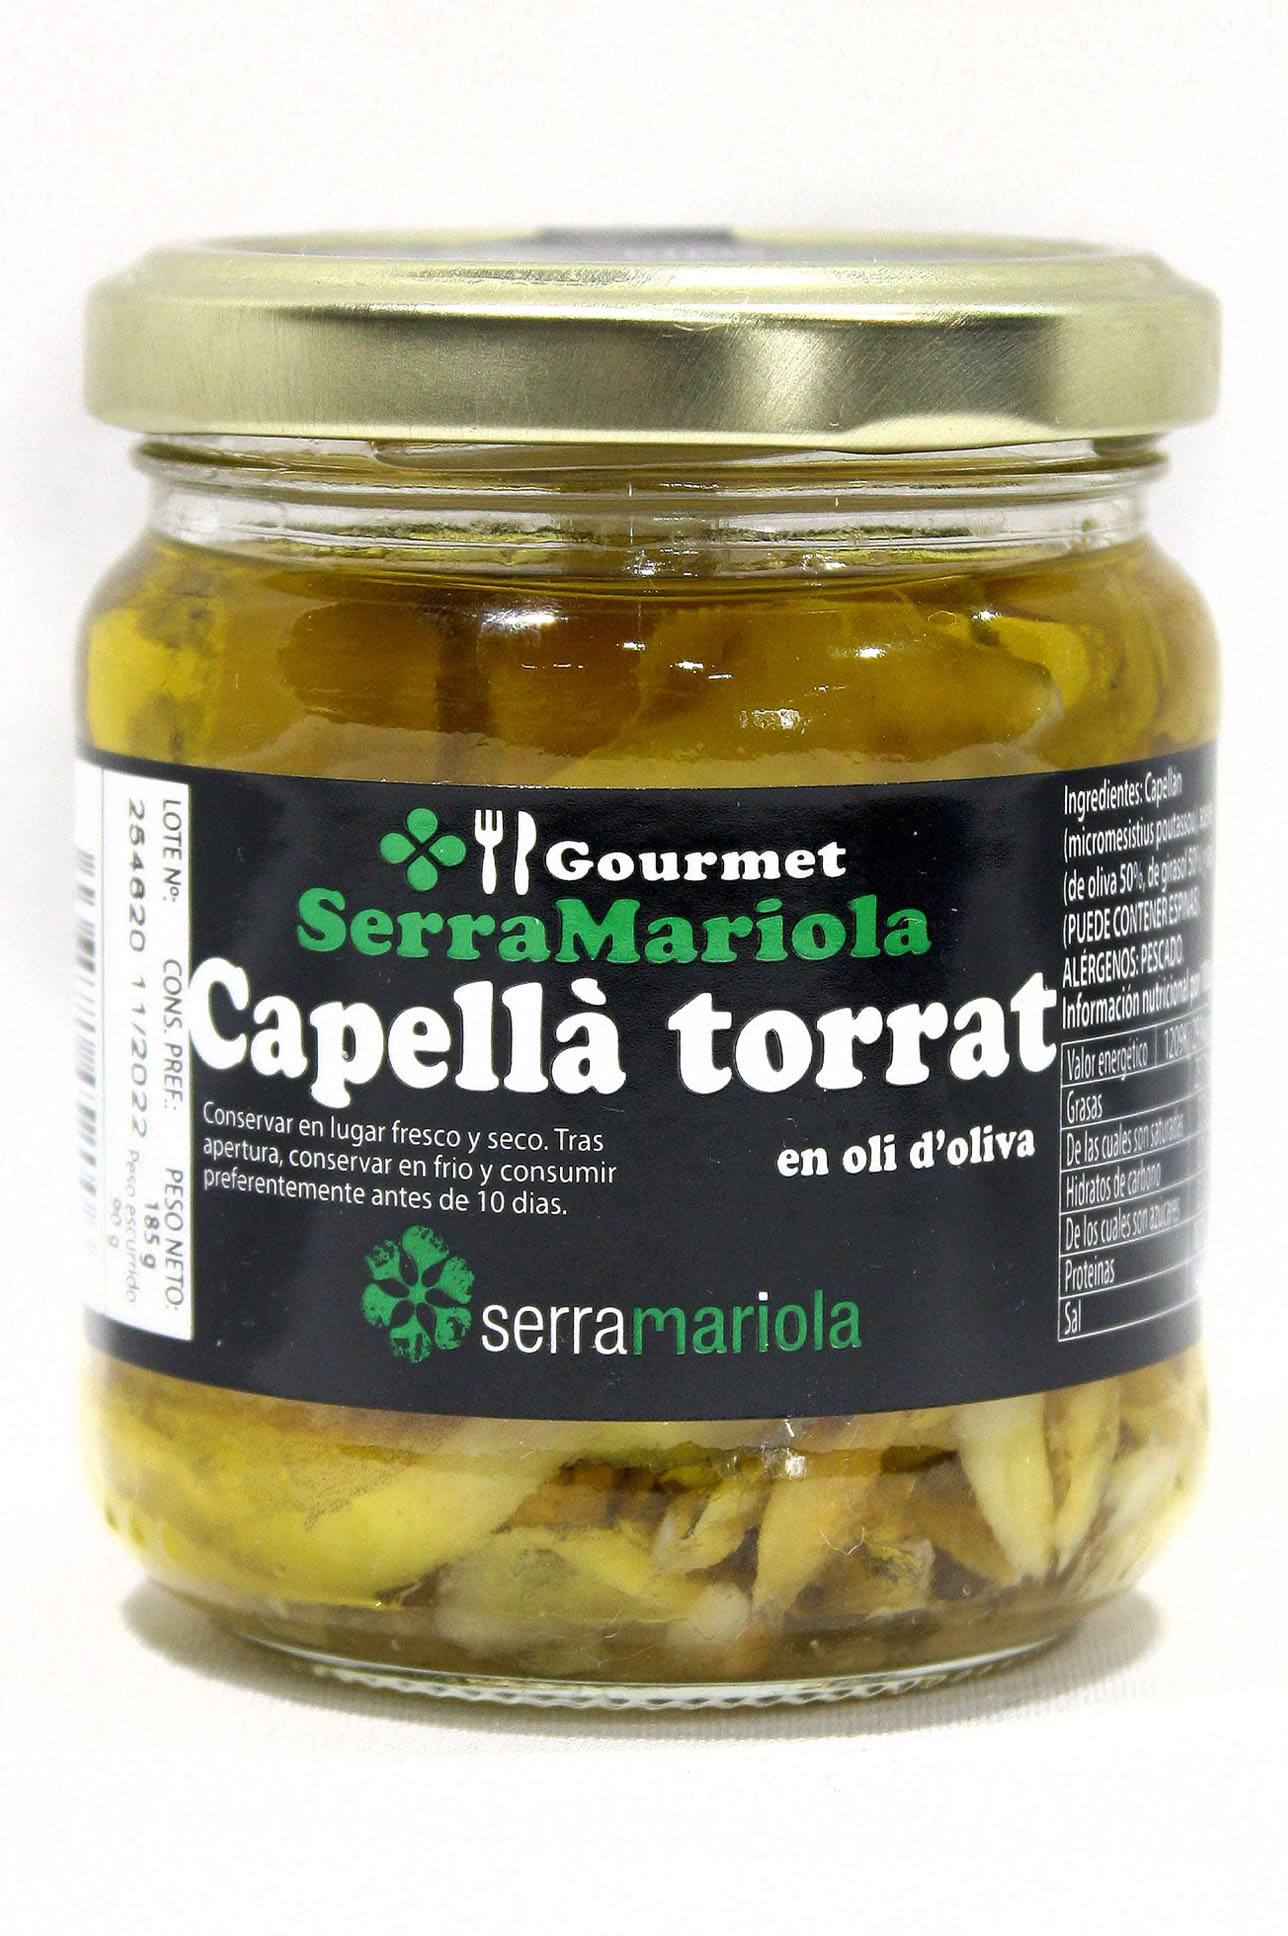 Capellán asado en aceite de oliva